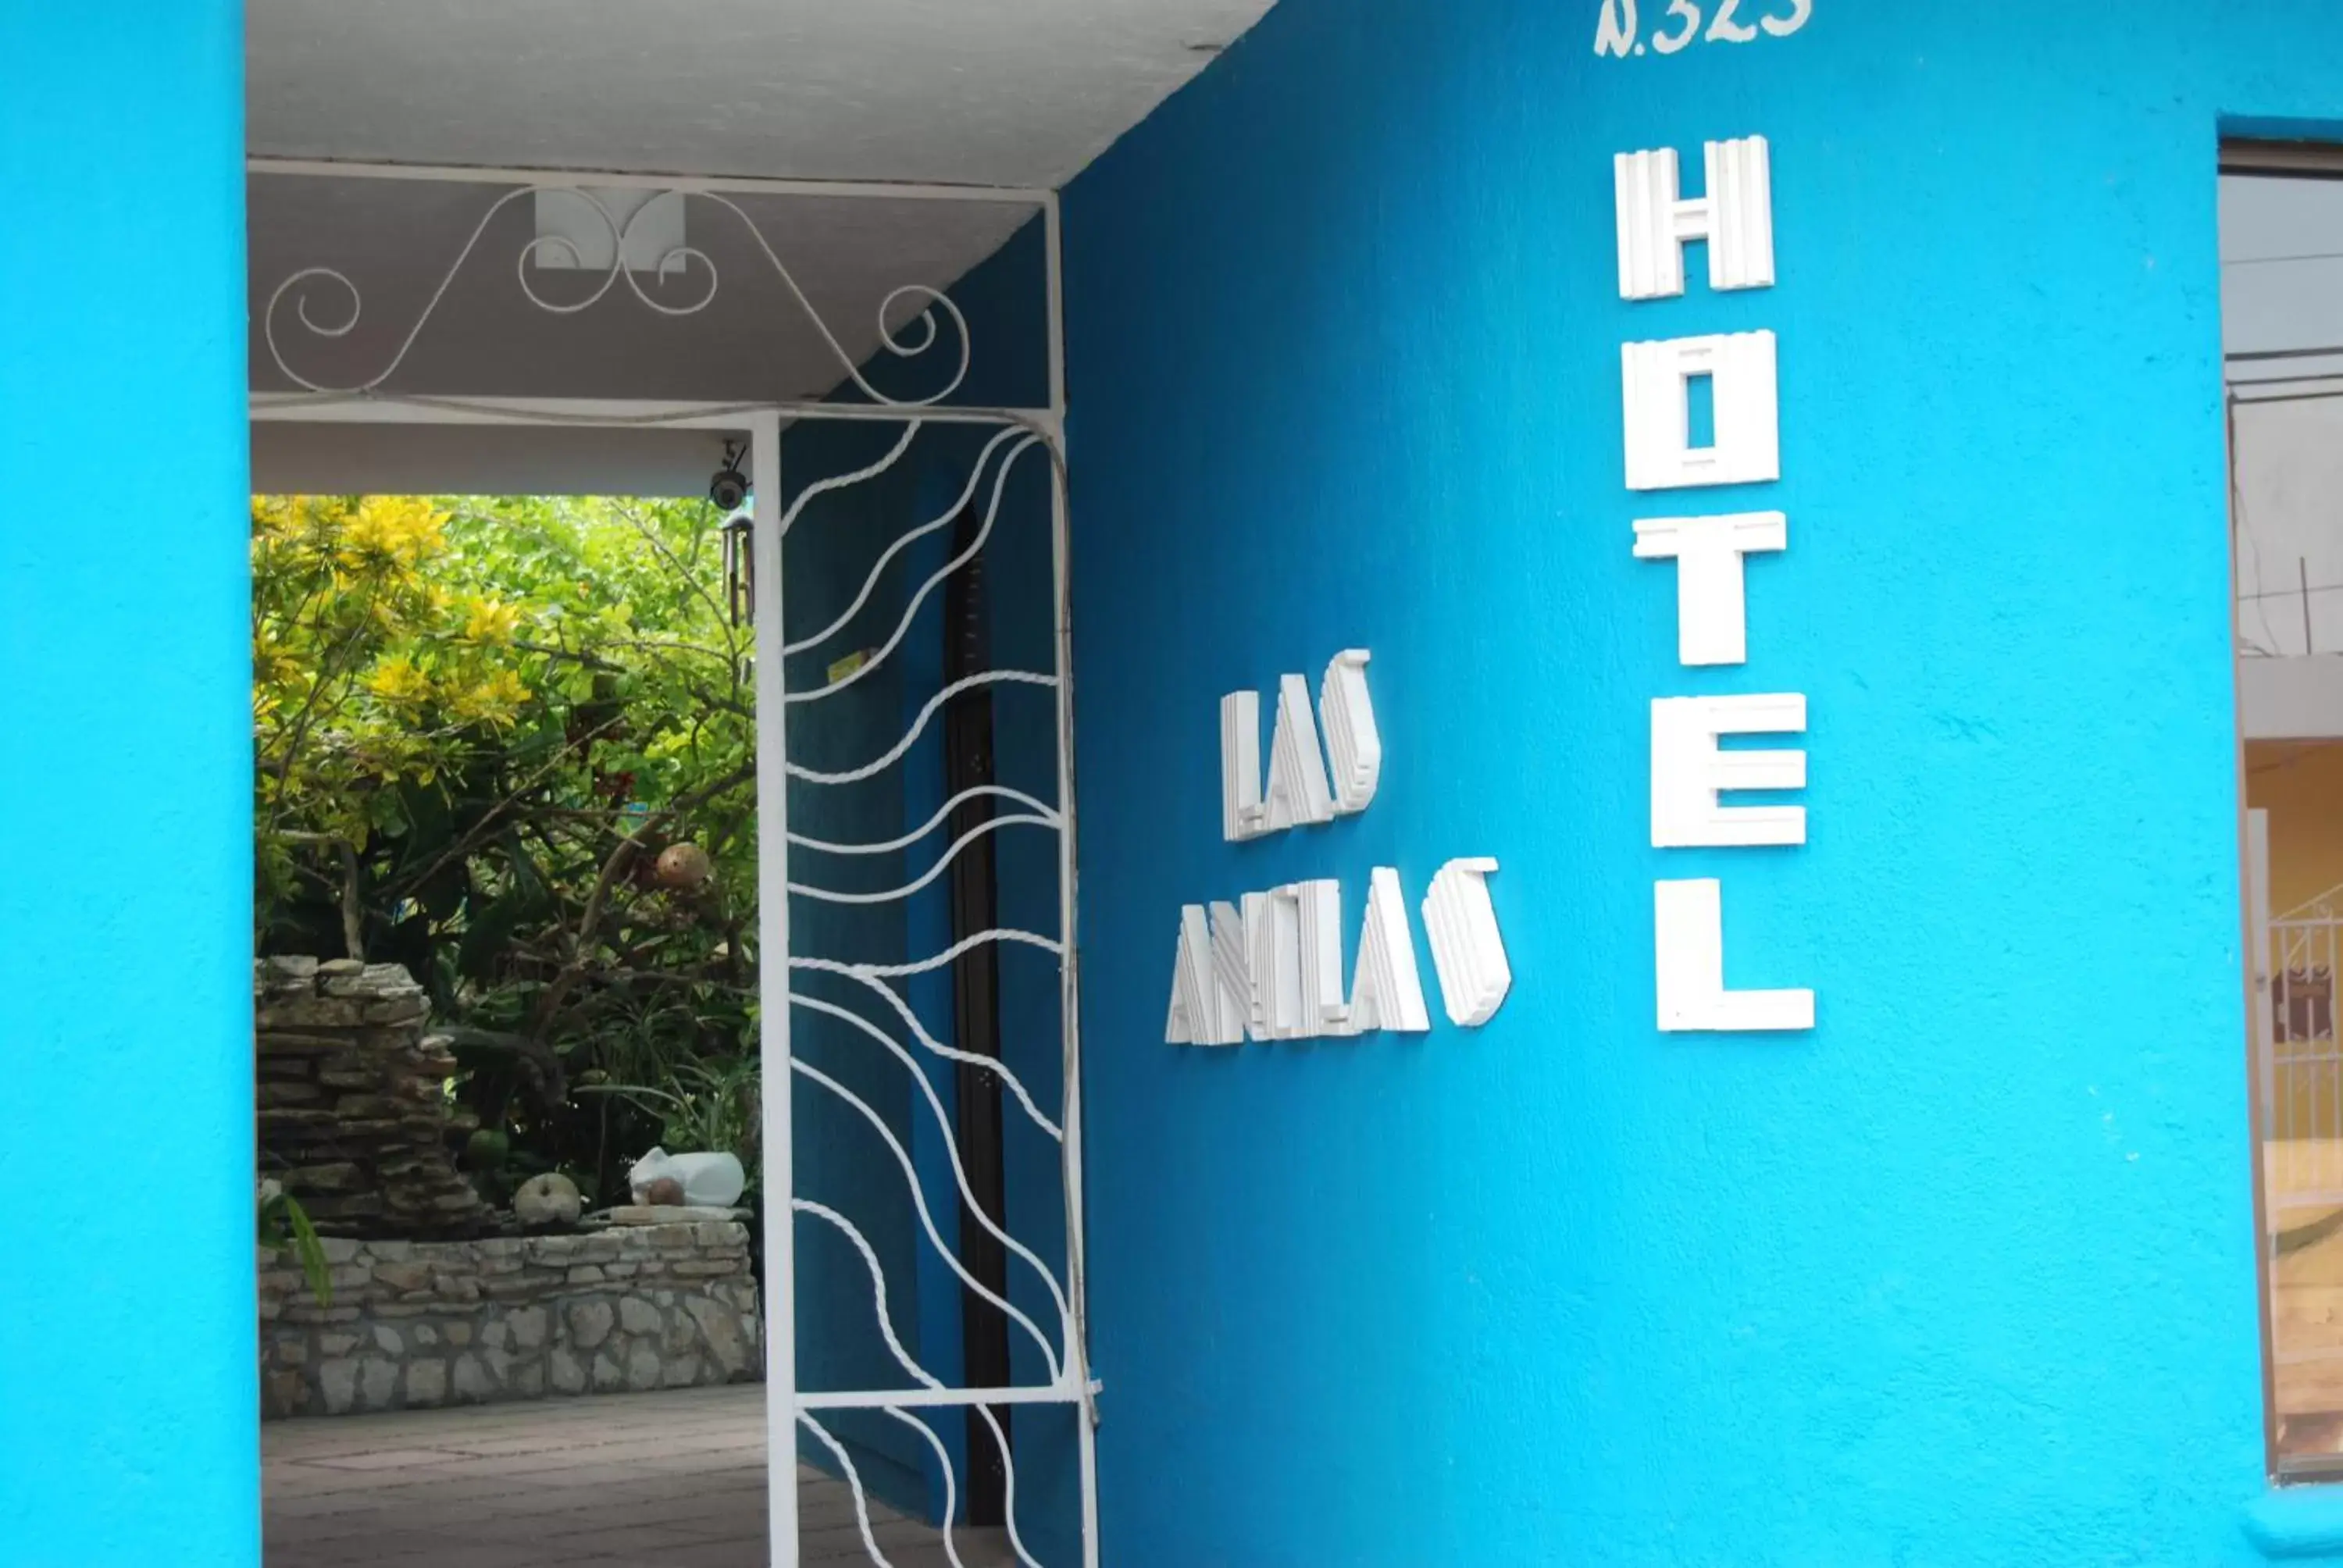 Property logo or sign in Hotel Villas Las Anclas